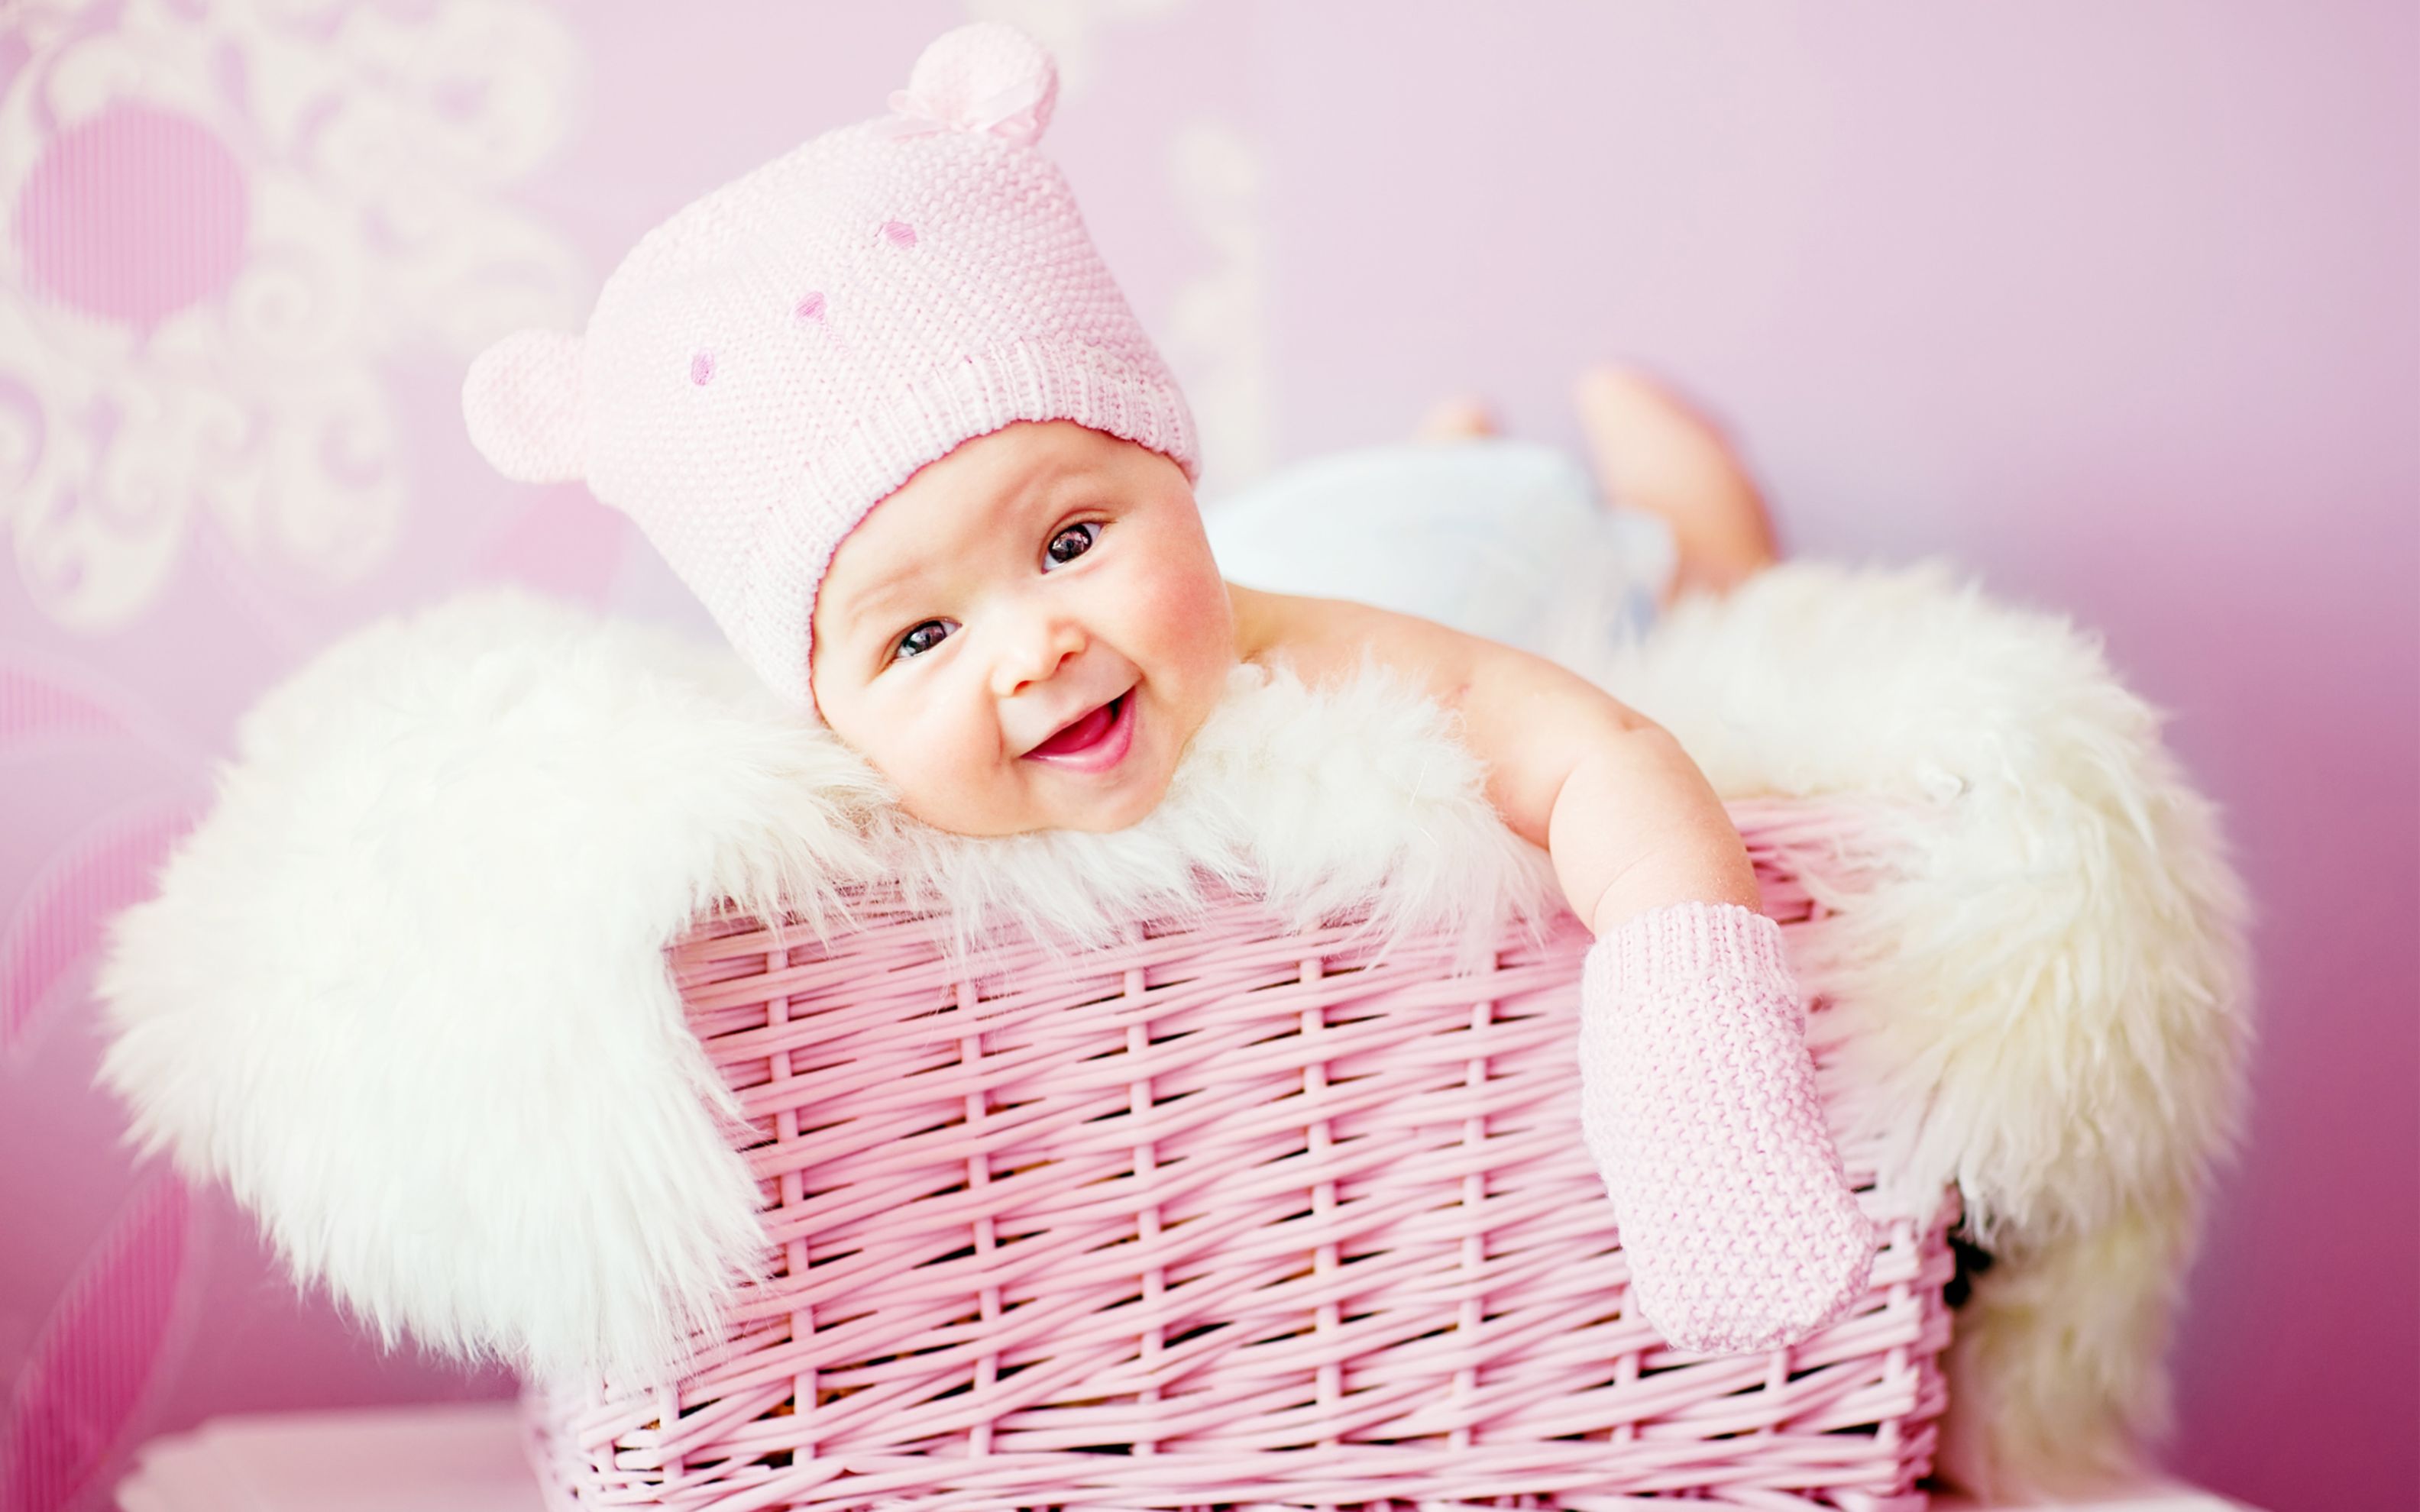 Cute Baby Girl in a Pink Wicker Basket.